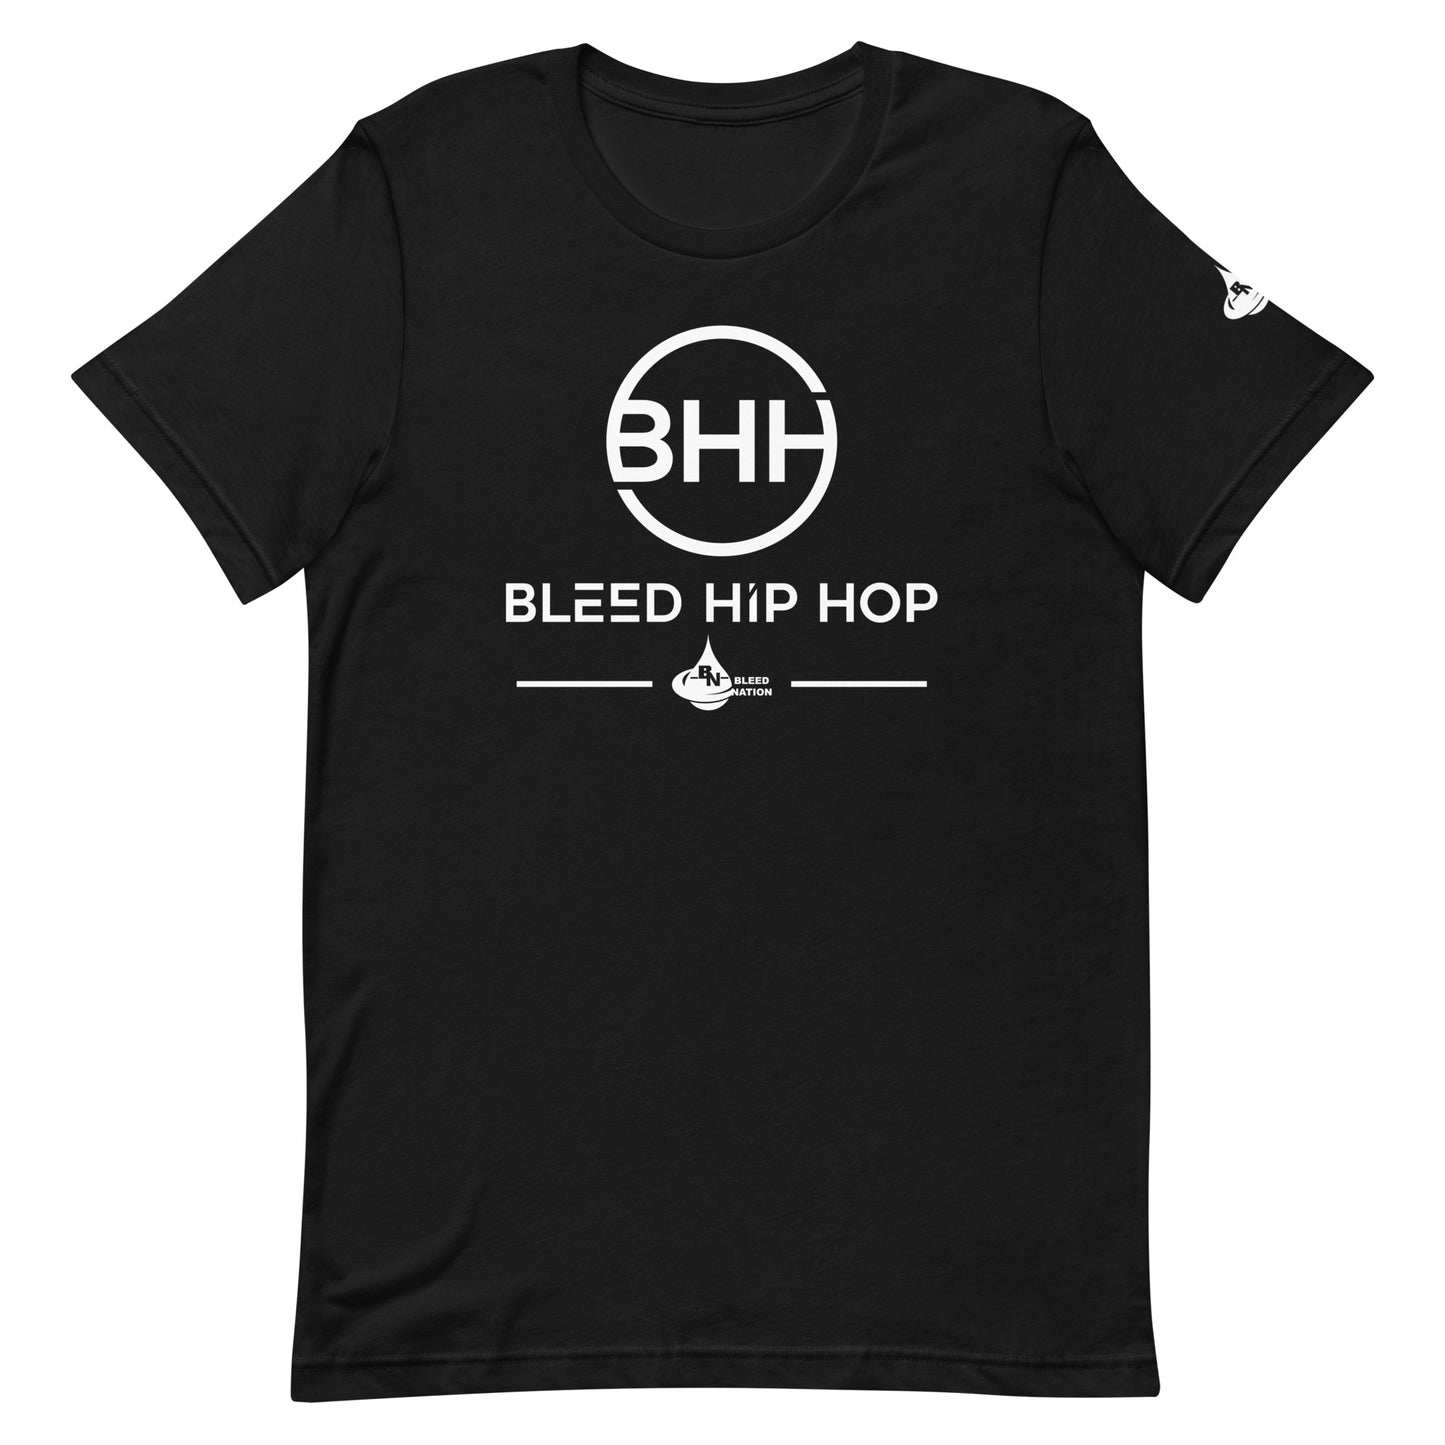 Bleed Hip Hop Unisex t-shirt